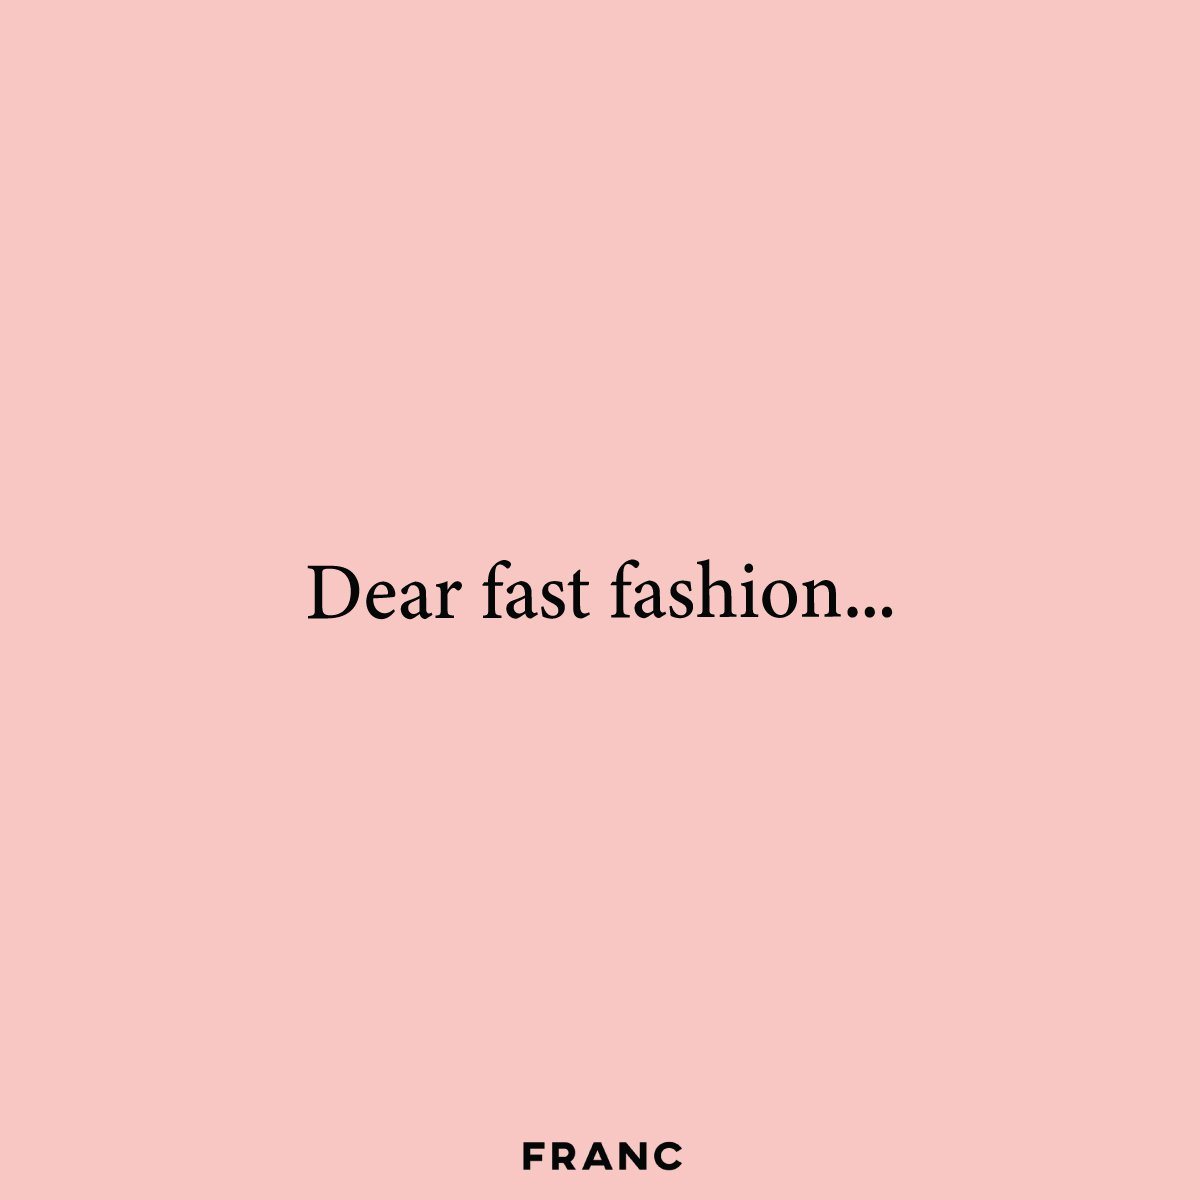 Dear Fast Fashion, - FRANC